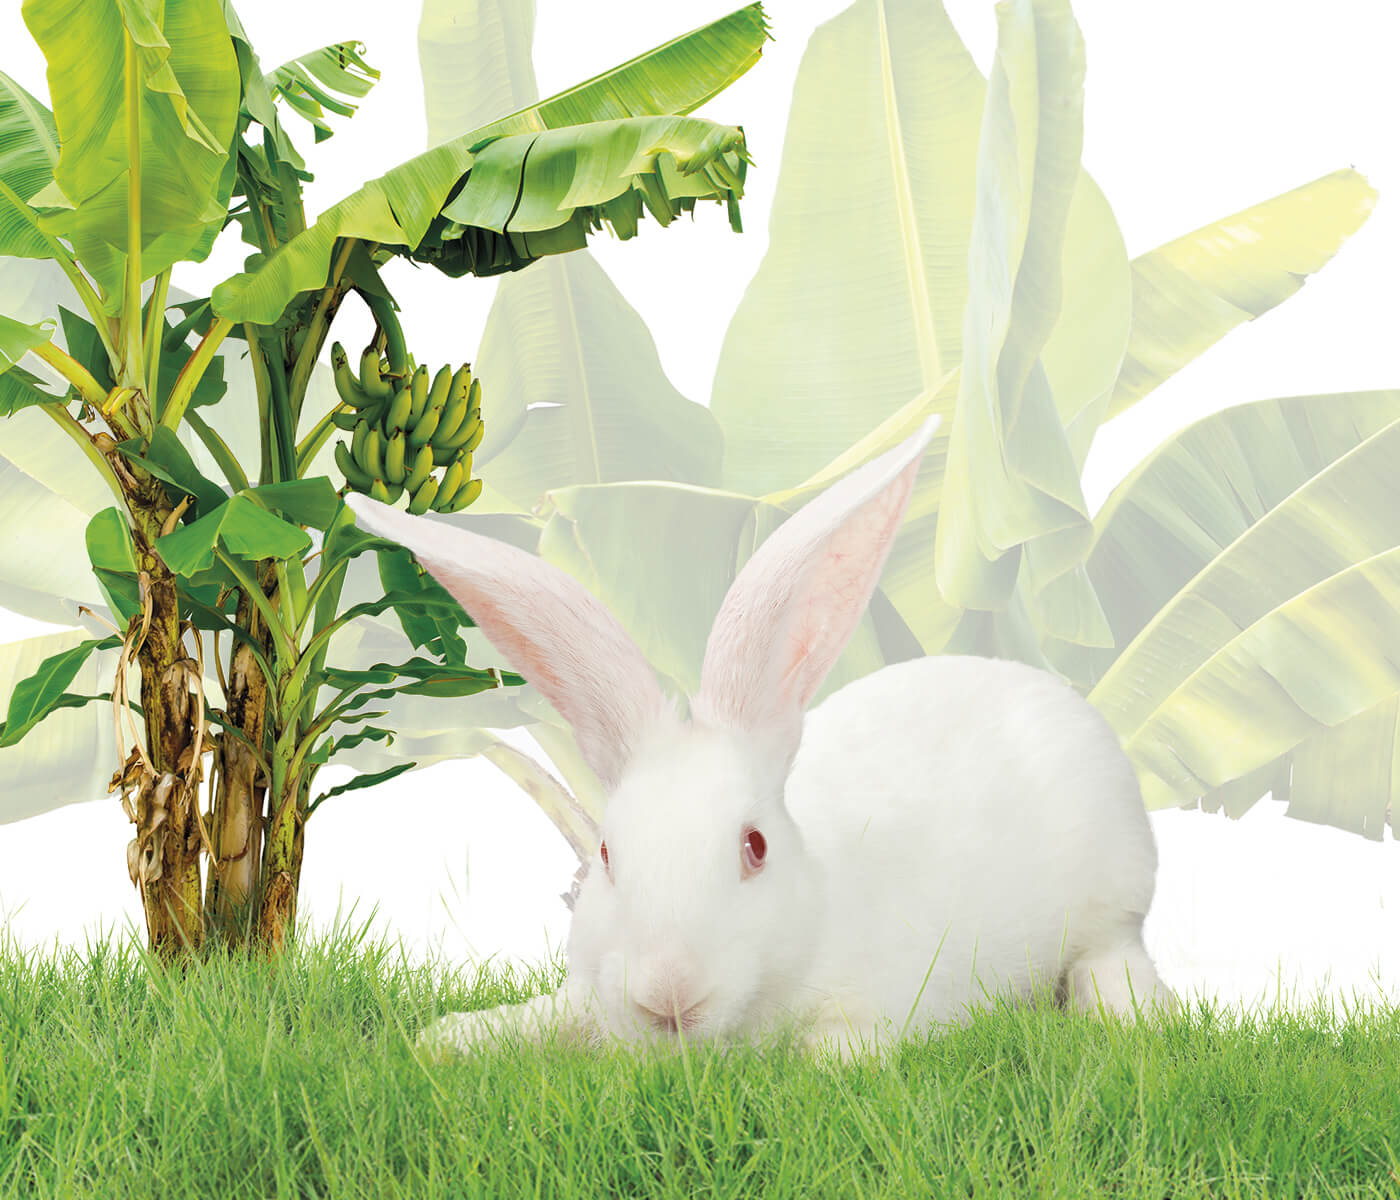 Avaliação nutricional da folha de bananeira desidratada para coelhos de...